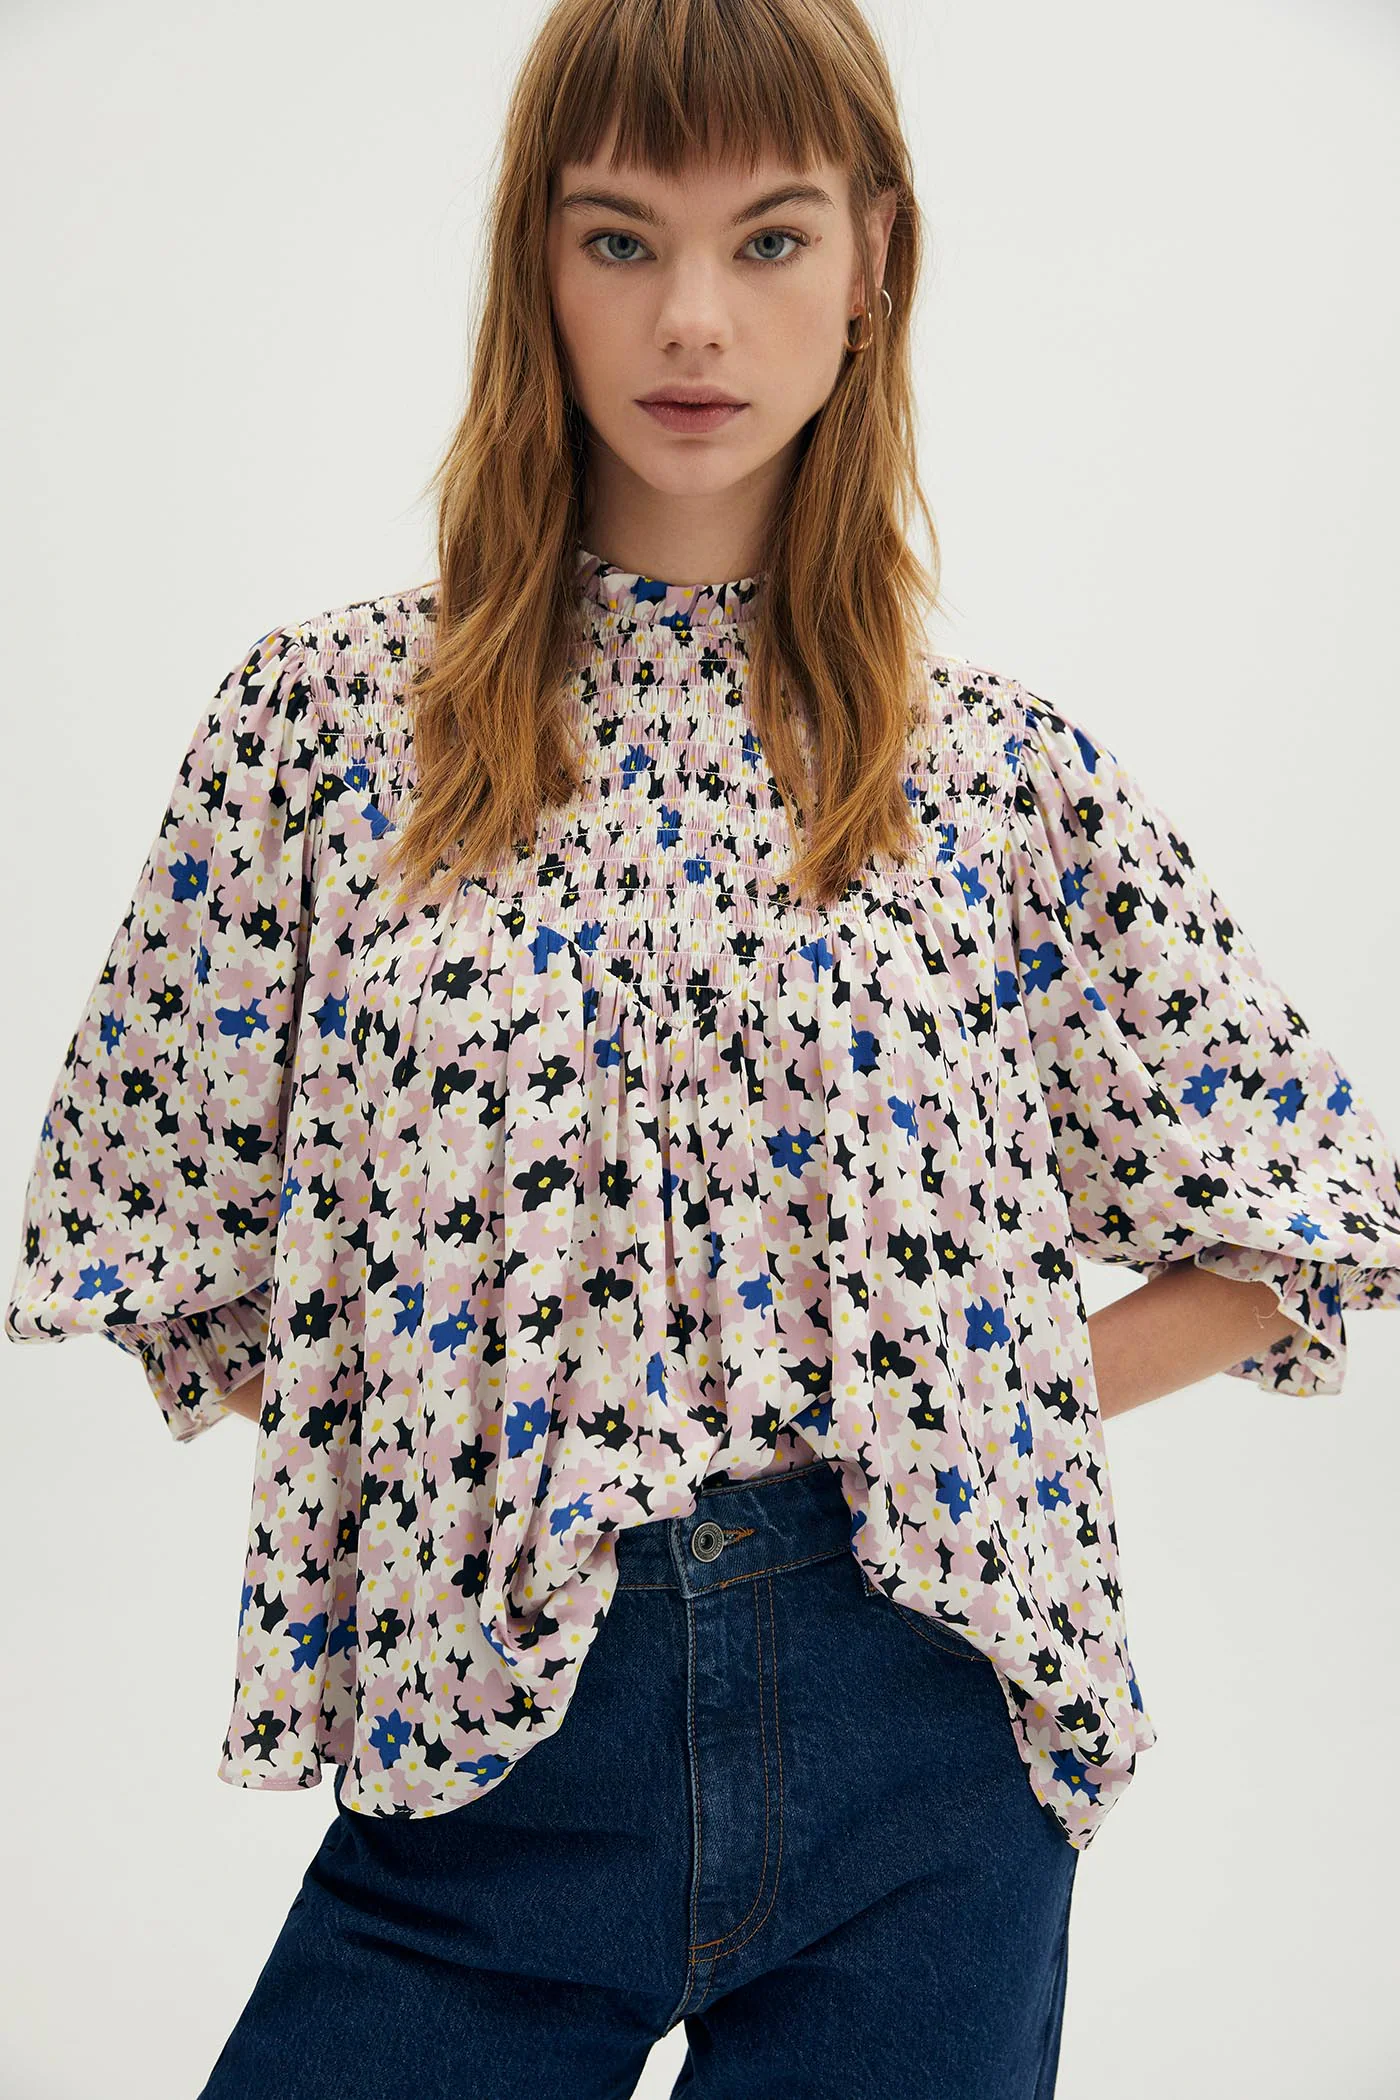 Fotos: Las blusas más de lo nuevo de Sfera para soñar con la primavera | Mujer Hoy